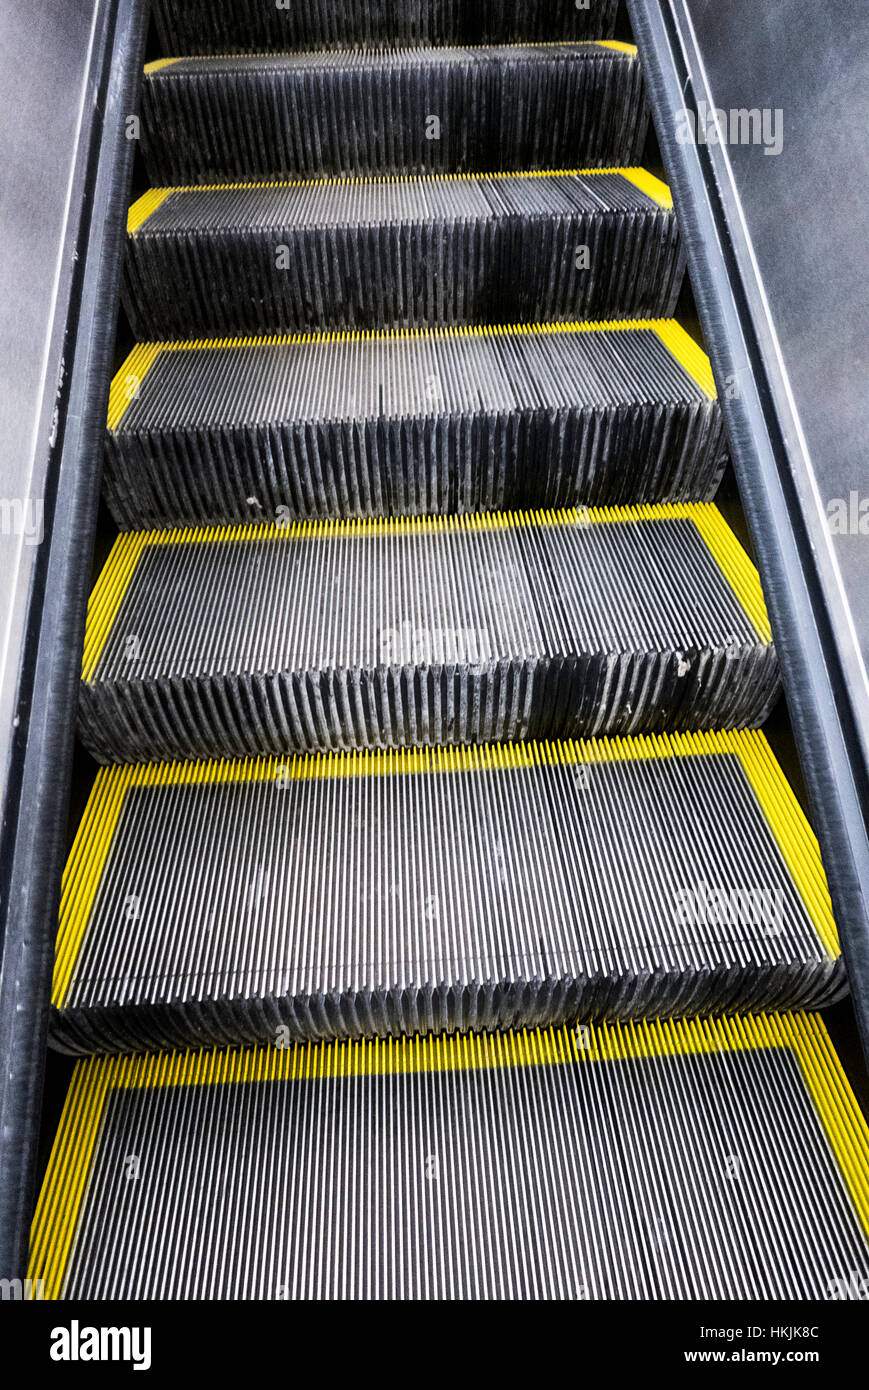 Detalle de escaleras escaleras. Foto de stock